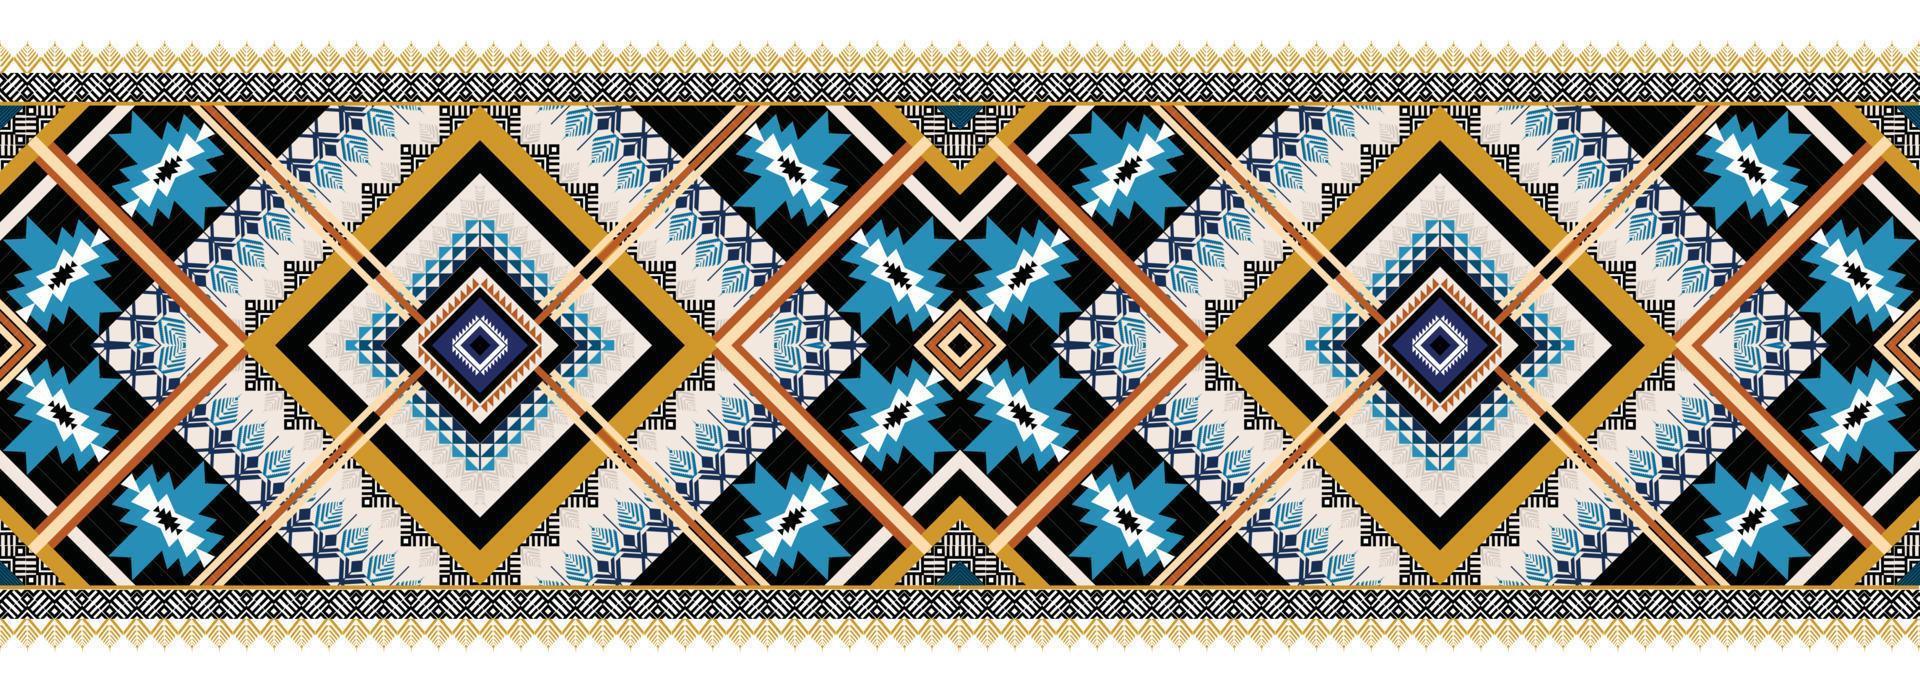 motif géométrique ethnique horizontal. style de motif textile américain, motif aztèque. conception de modèle sans couture pour le tissu, le rideau, le fond, le tapis, le papier peint, l'habillement, l'emballage, la tuile. vecteur américain.